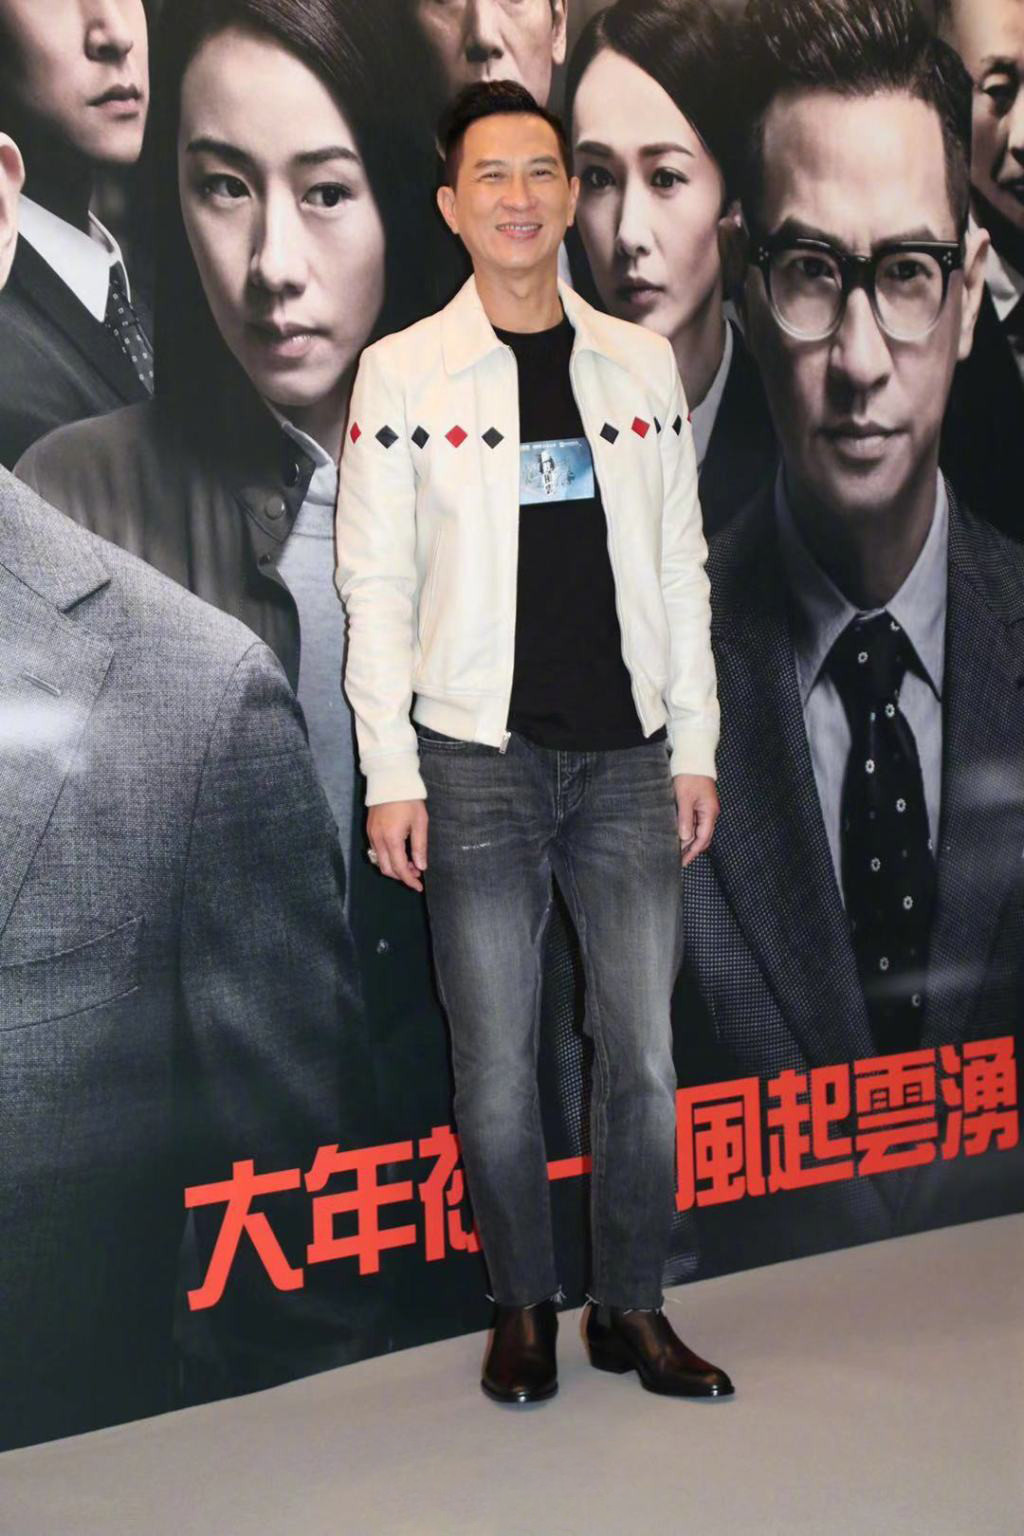 《廉政风云》香港首映礼 "针锋相对"特辑发布揭幕后真相